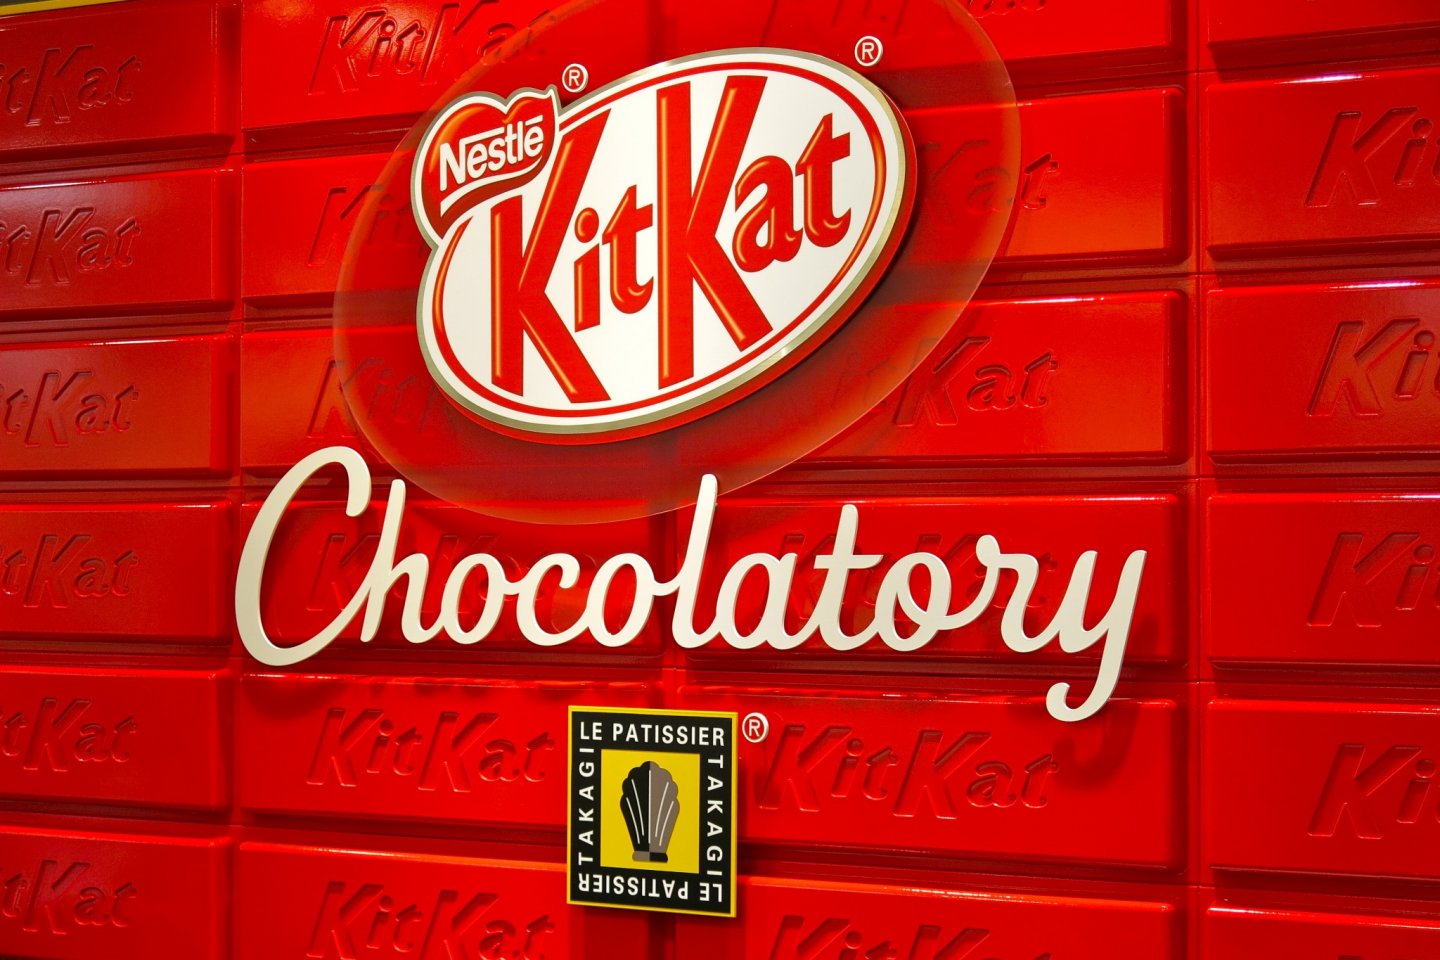 World's first KitKat Chocolatory celebrated its grand opening on January 17, 2014 at Seibu Ikebukuro, Tokyo, Japan!